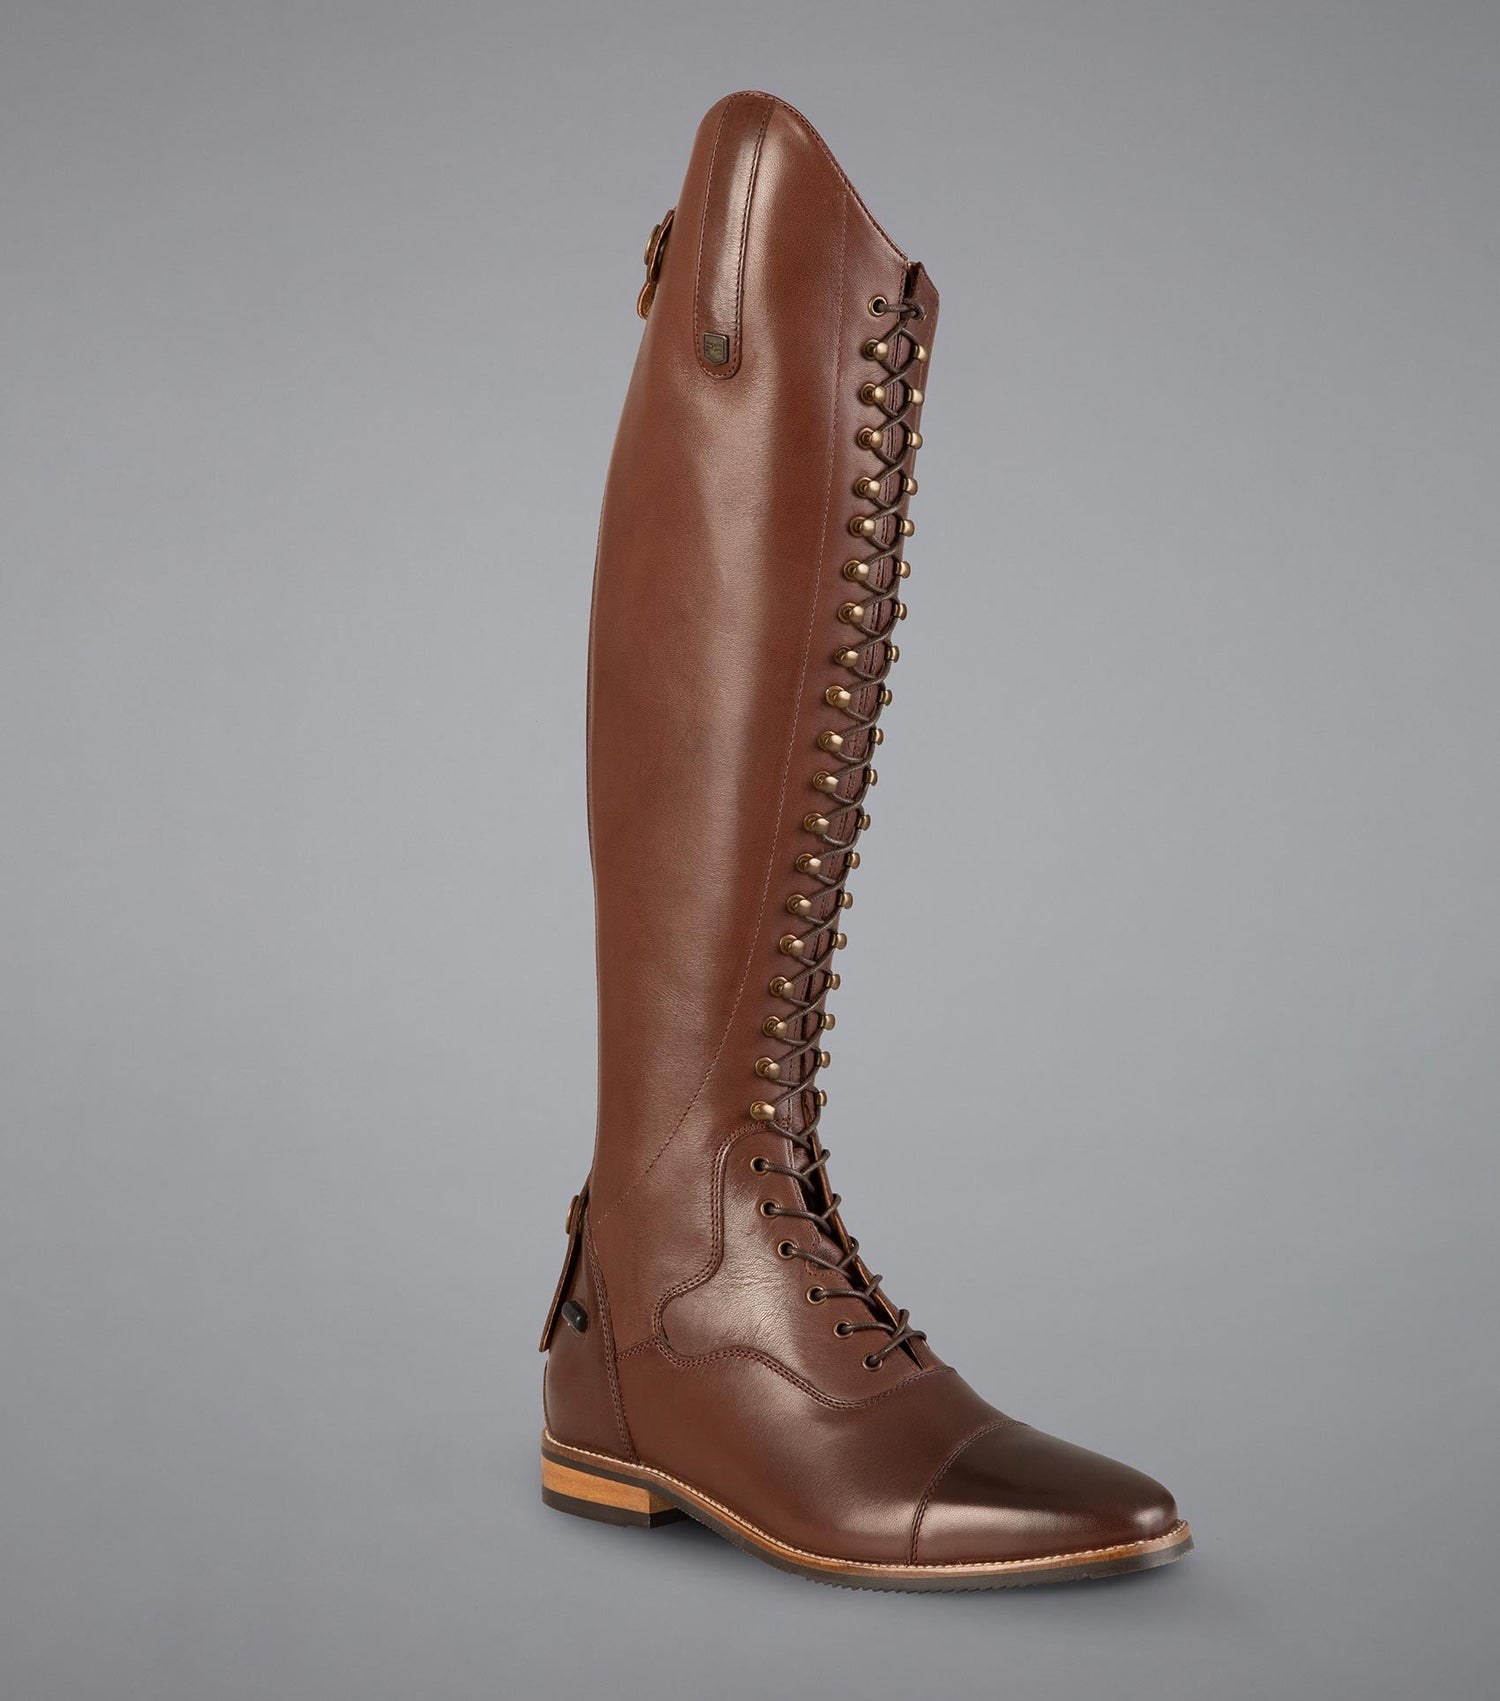 Description:Maurizia Ladies Lace Front Tall Leather Riding Boots_Colour:Brown_Position:1